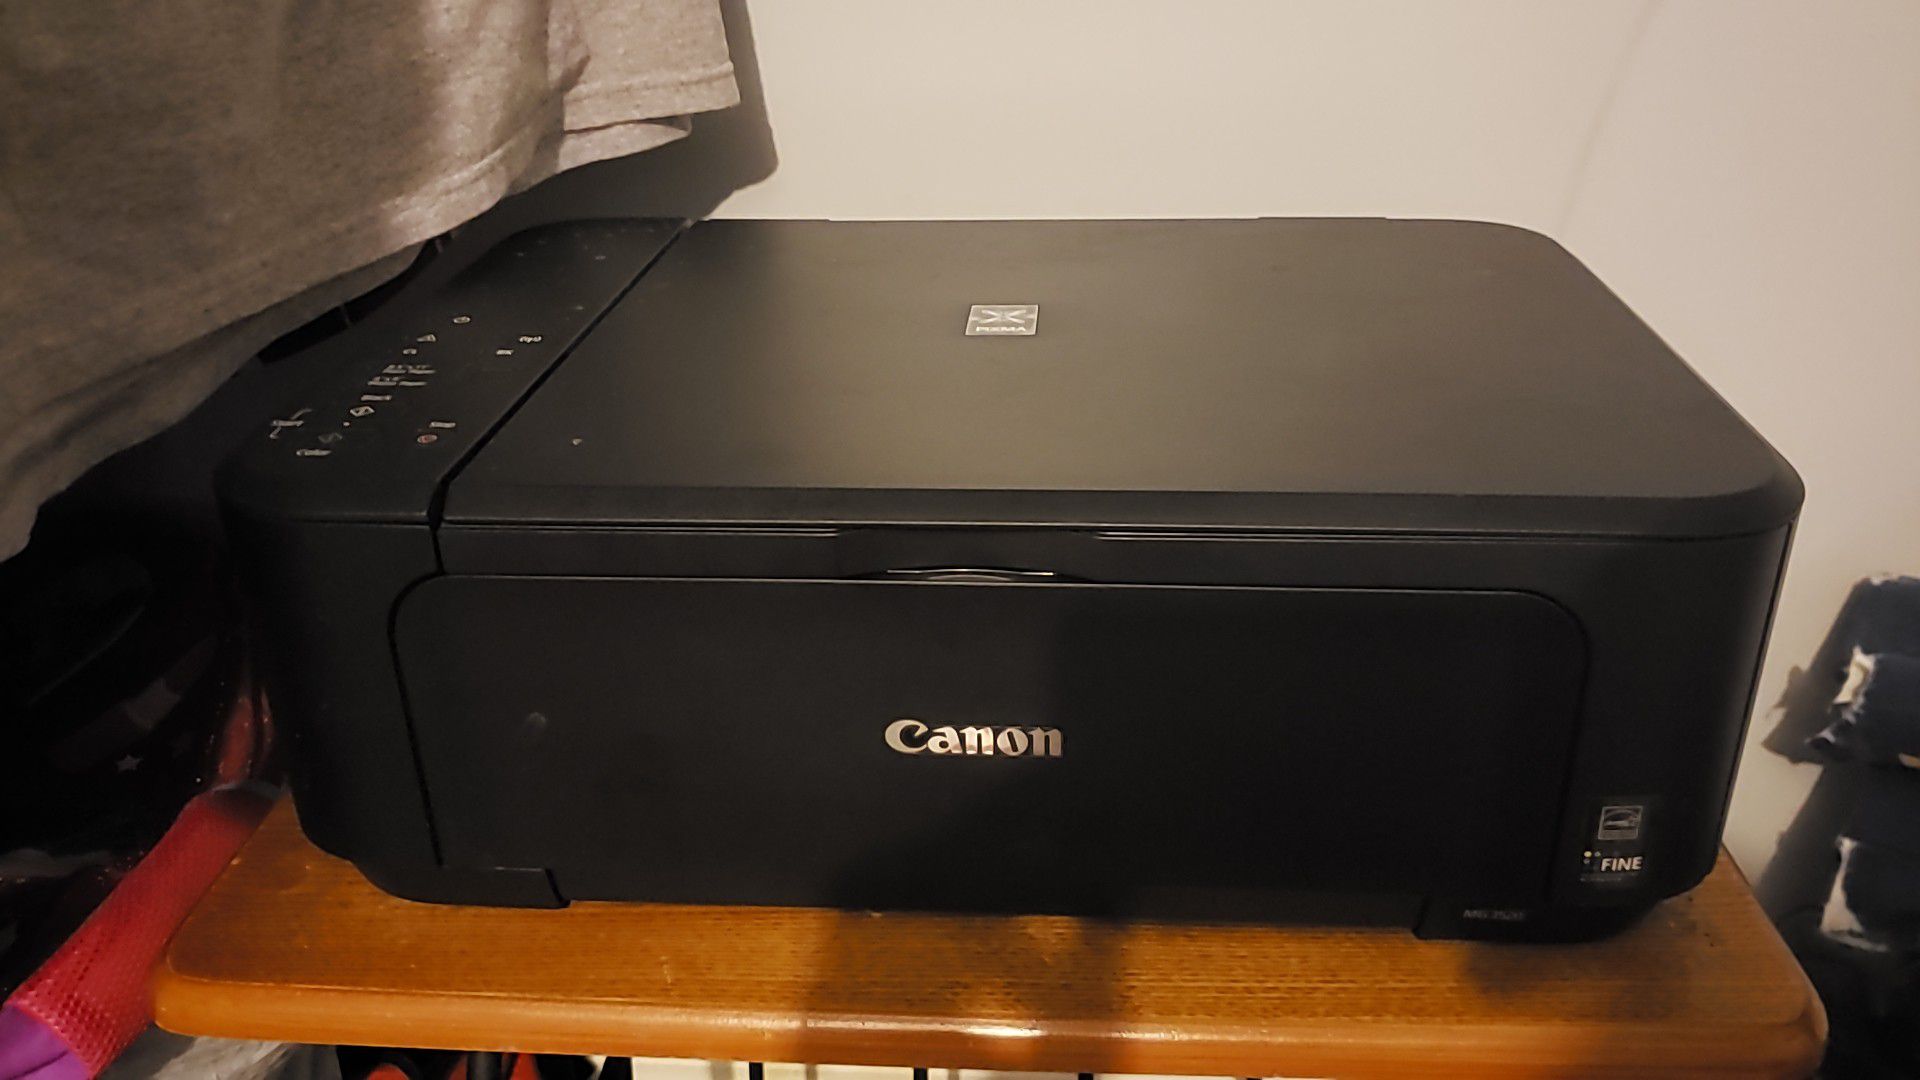 Canon Printer/Copy Machine